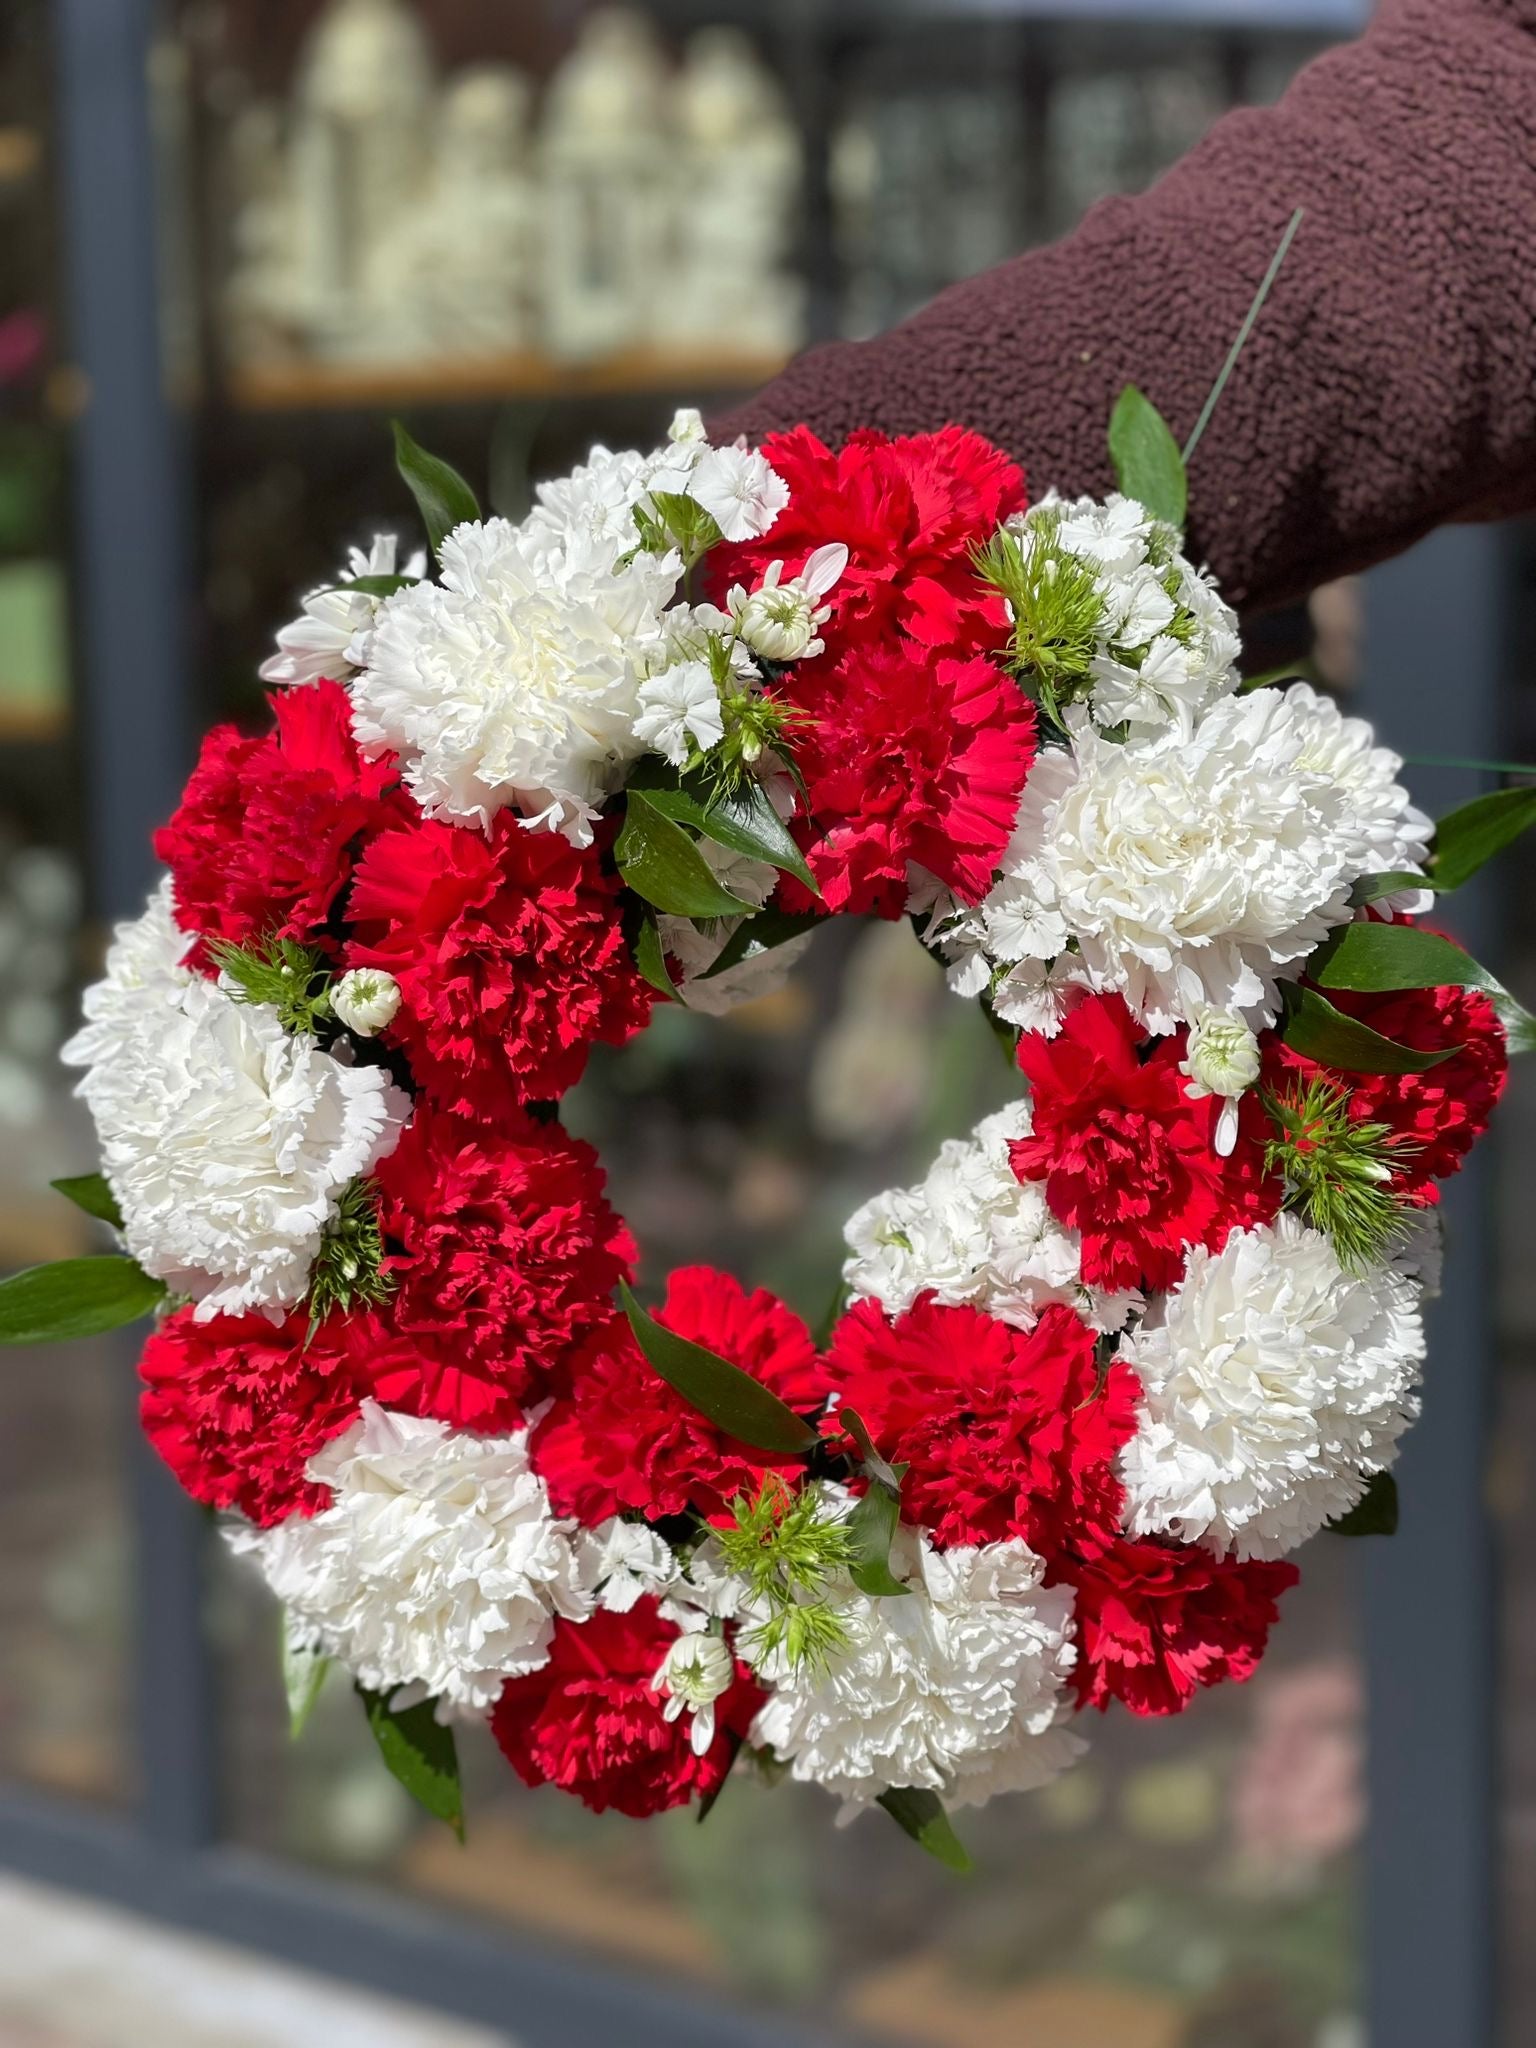 Aranjament funerar cu garoafe roșii și albe - coroană elegantă - livrare gratuită flori în Reșița